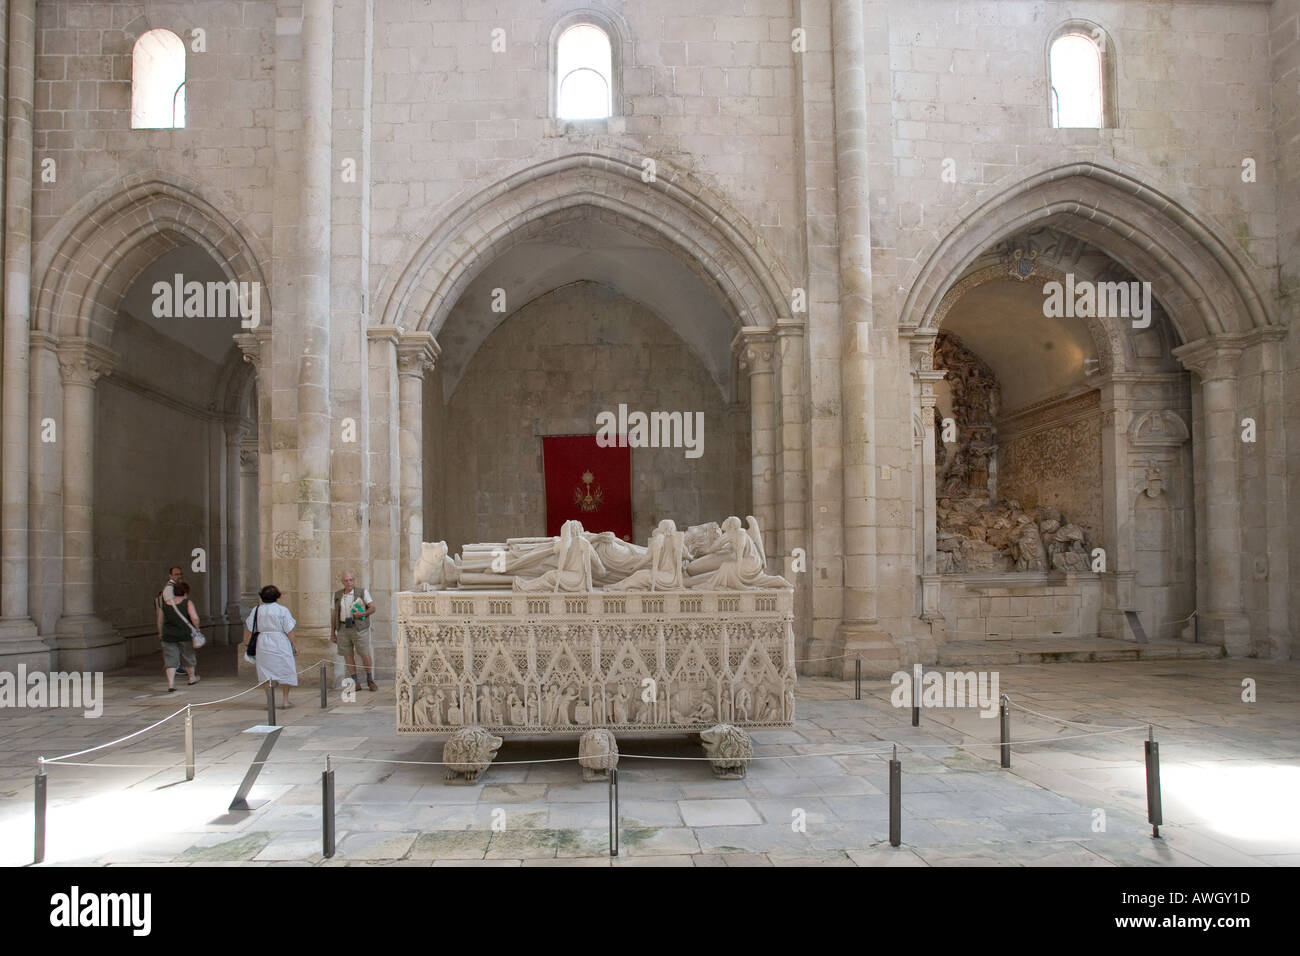 L'interno del monastero di Alcobaca in Portogallo che mostra i turisti alla ricerca presso la tomba di Dom Pedro. Foto Stock